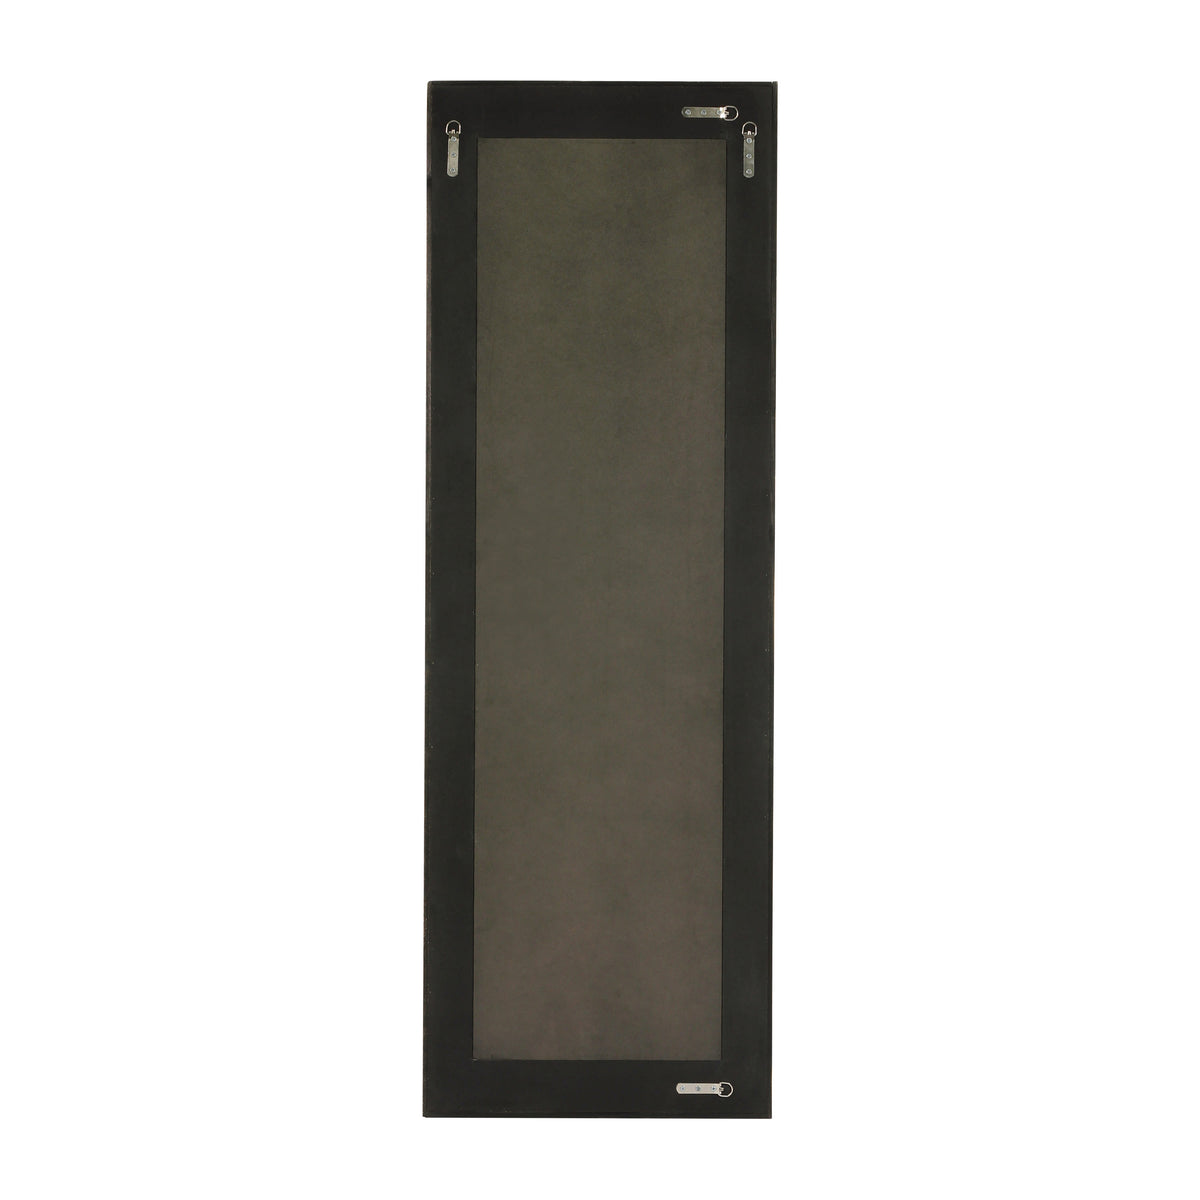 Dark Brown |#| Rustic 22x65 Wood Framed Floor Length Mirror-Wall Mount or Leaning - Dark Brown